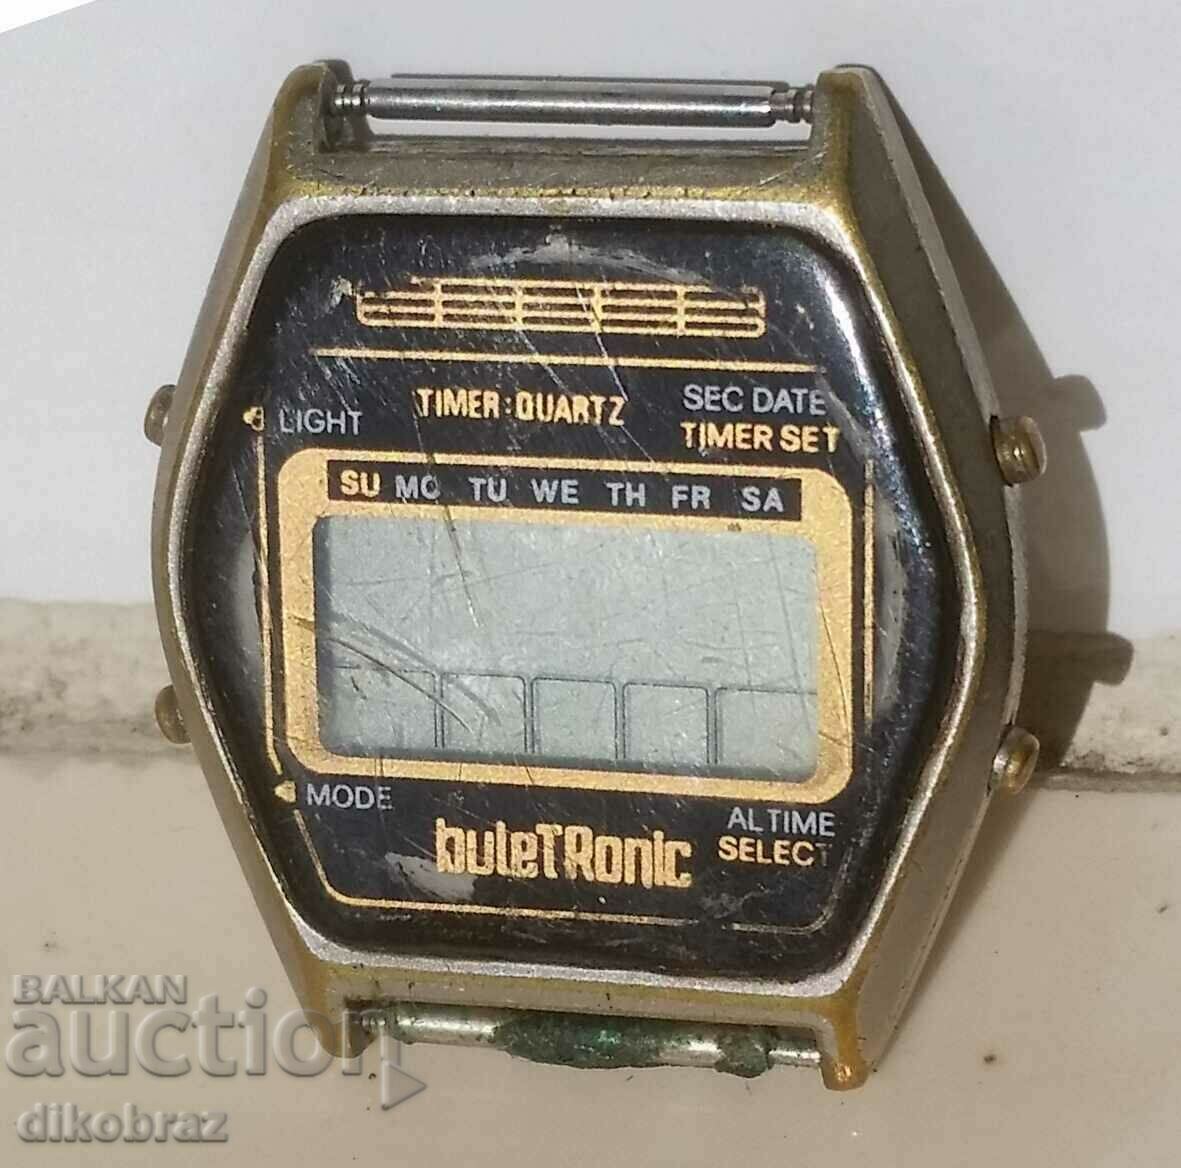 Buletronic Булетроник 14 конгрес ДКМС ръчен часовник 1982 г